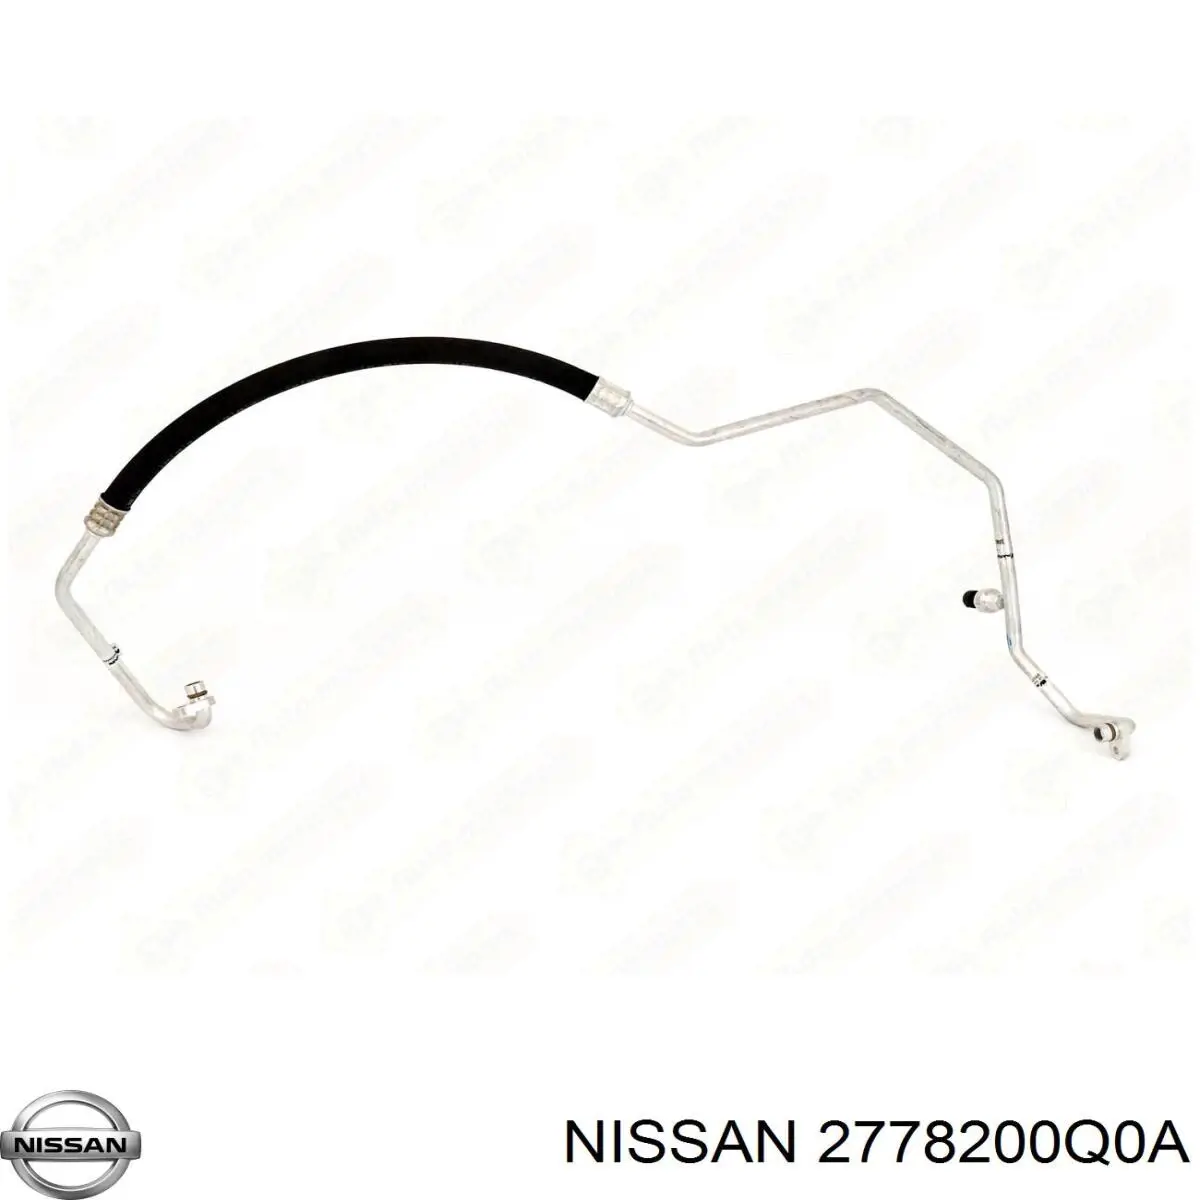 2778200Q0A Nissan mangueira de aparelho de ar condicionado, desde o compressor até o radiador